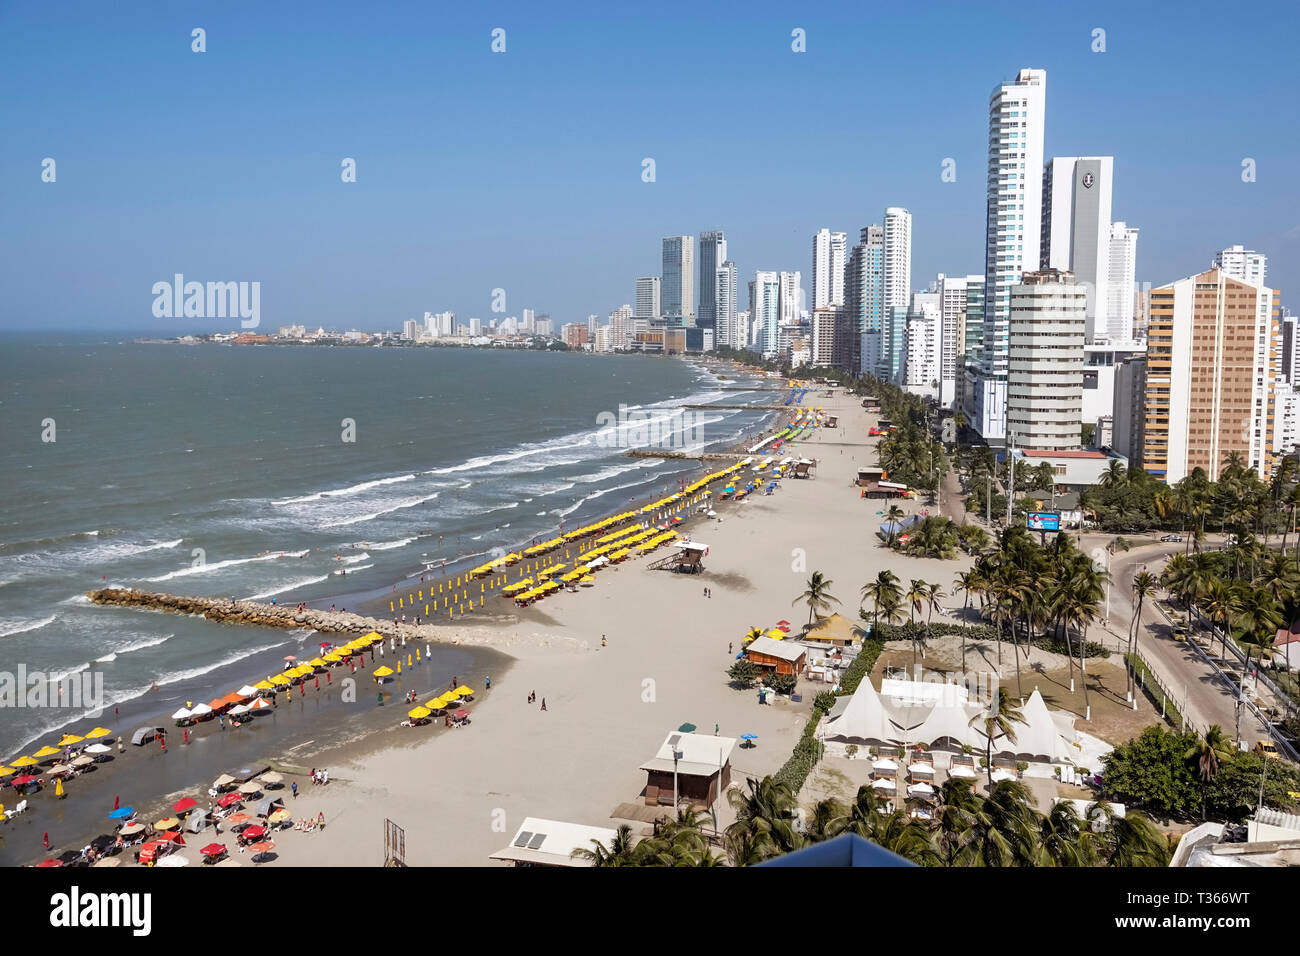 Cartagena Colombia, Bocagrande, Caribbean Sea Water, spiaggia pubblica spiagge sabbia acqua noleggio ombrelloni, skyline città alto edificio fronte oceano coste Foto Stock